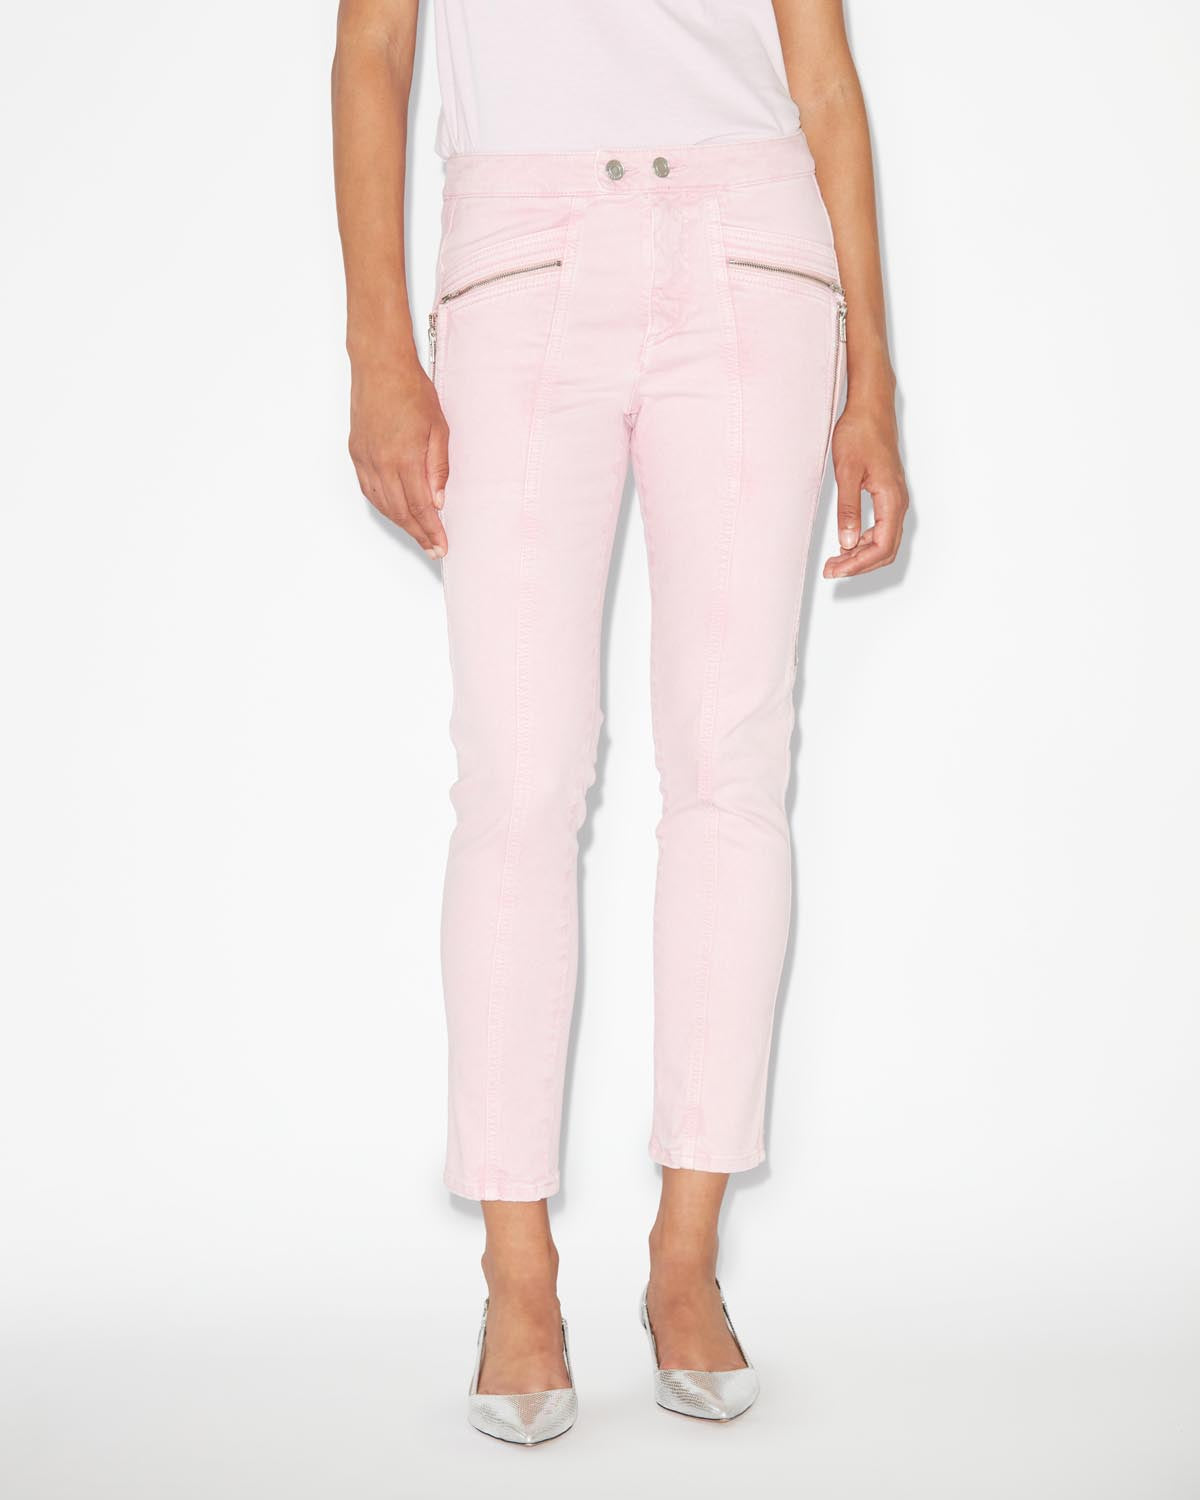 Prezi pants Woman Light pink 5